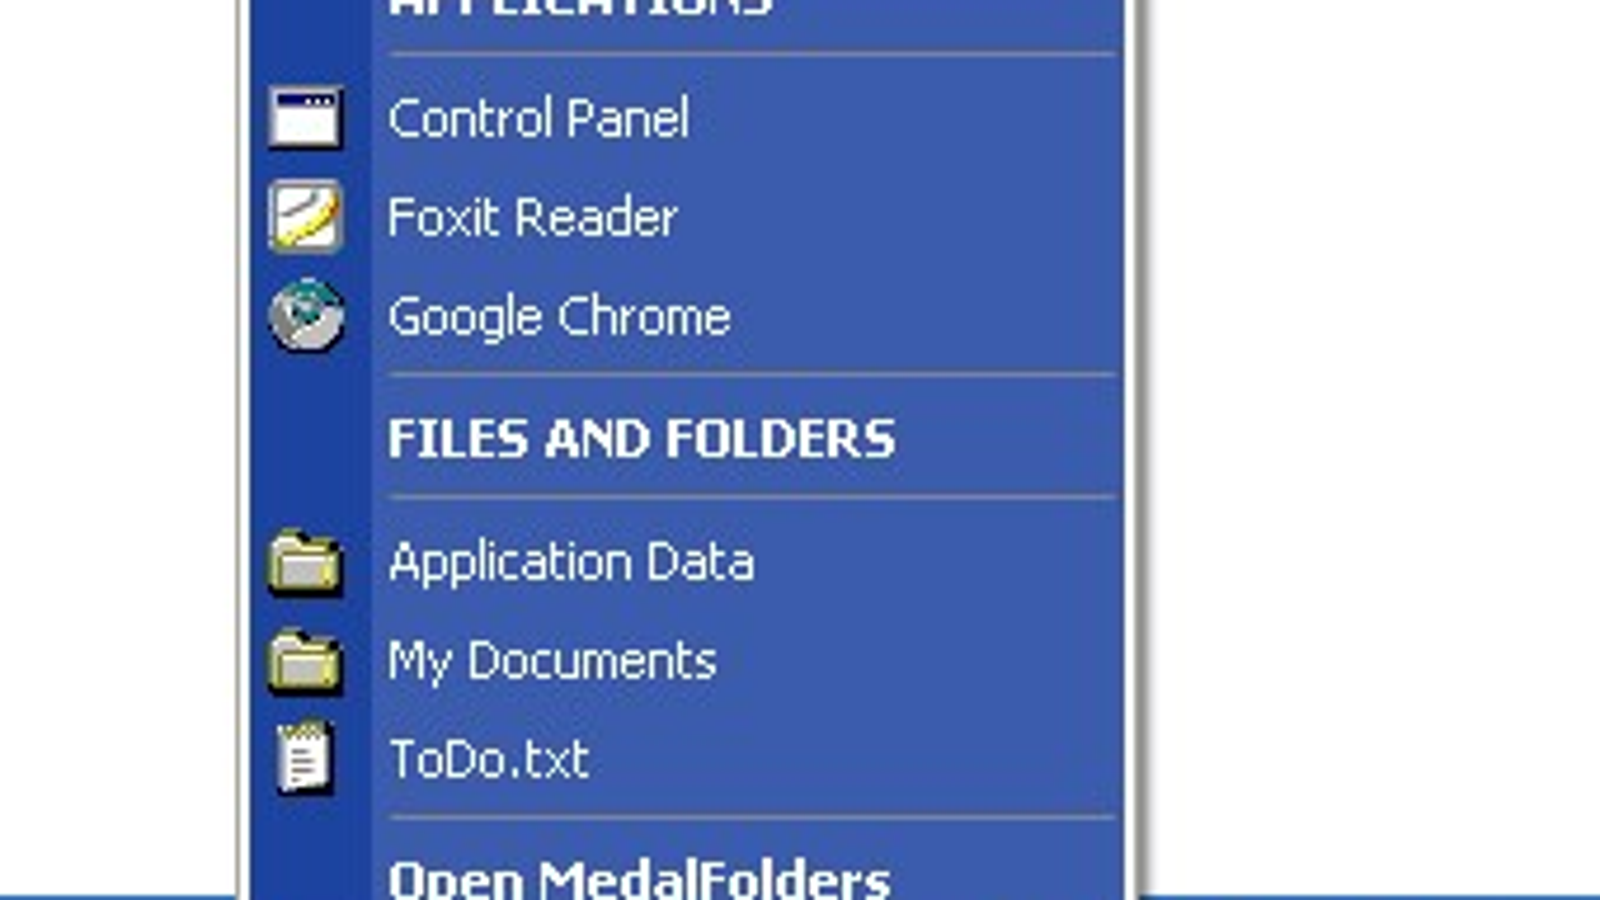 FolderSizes 9.5.425 instal